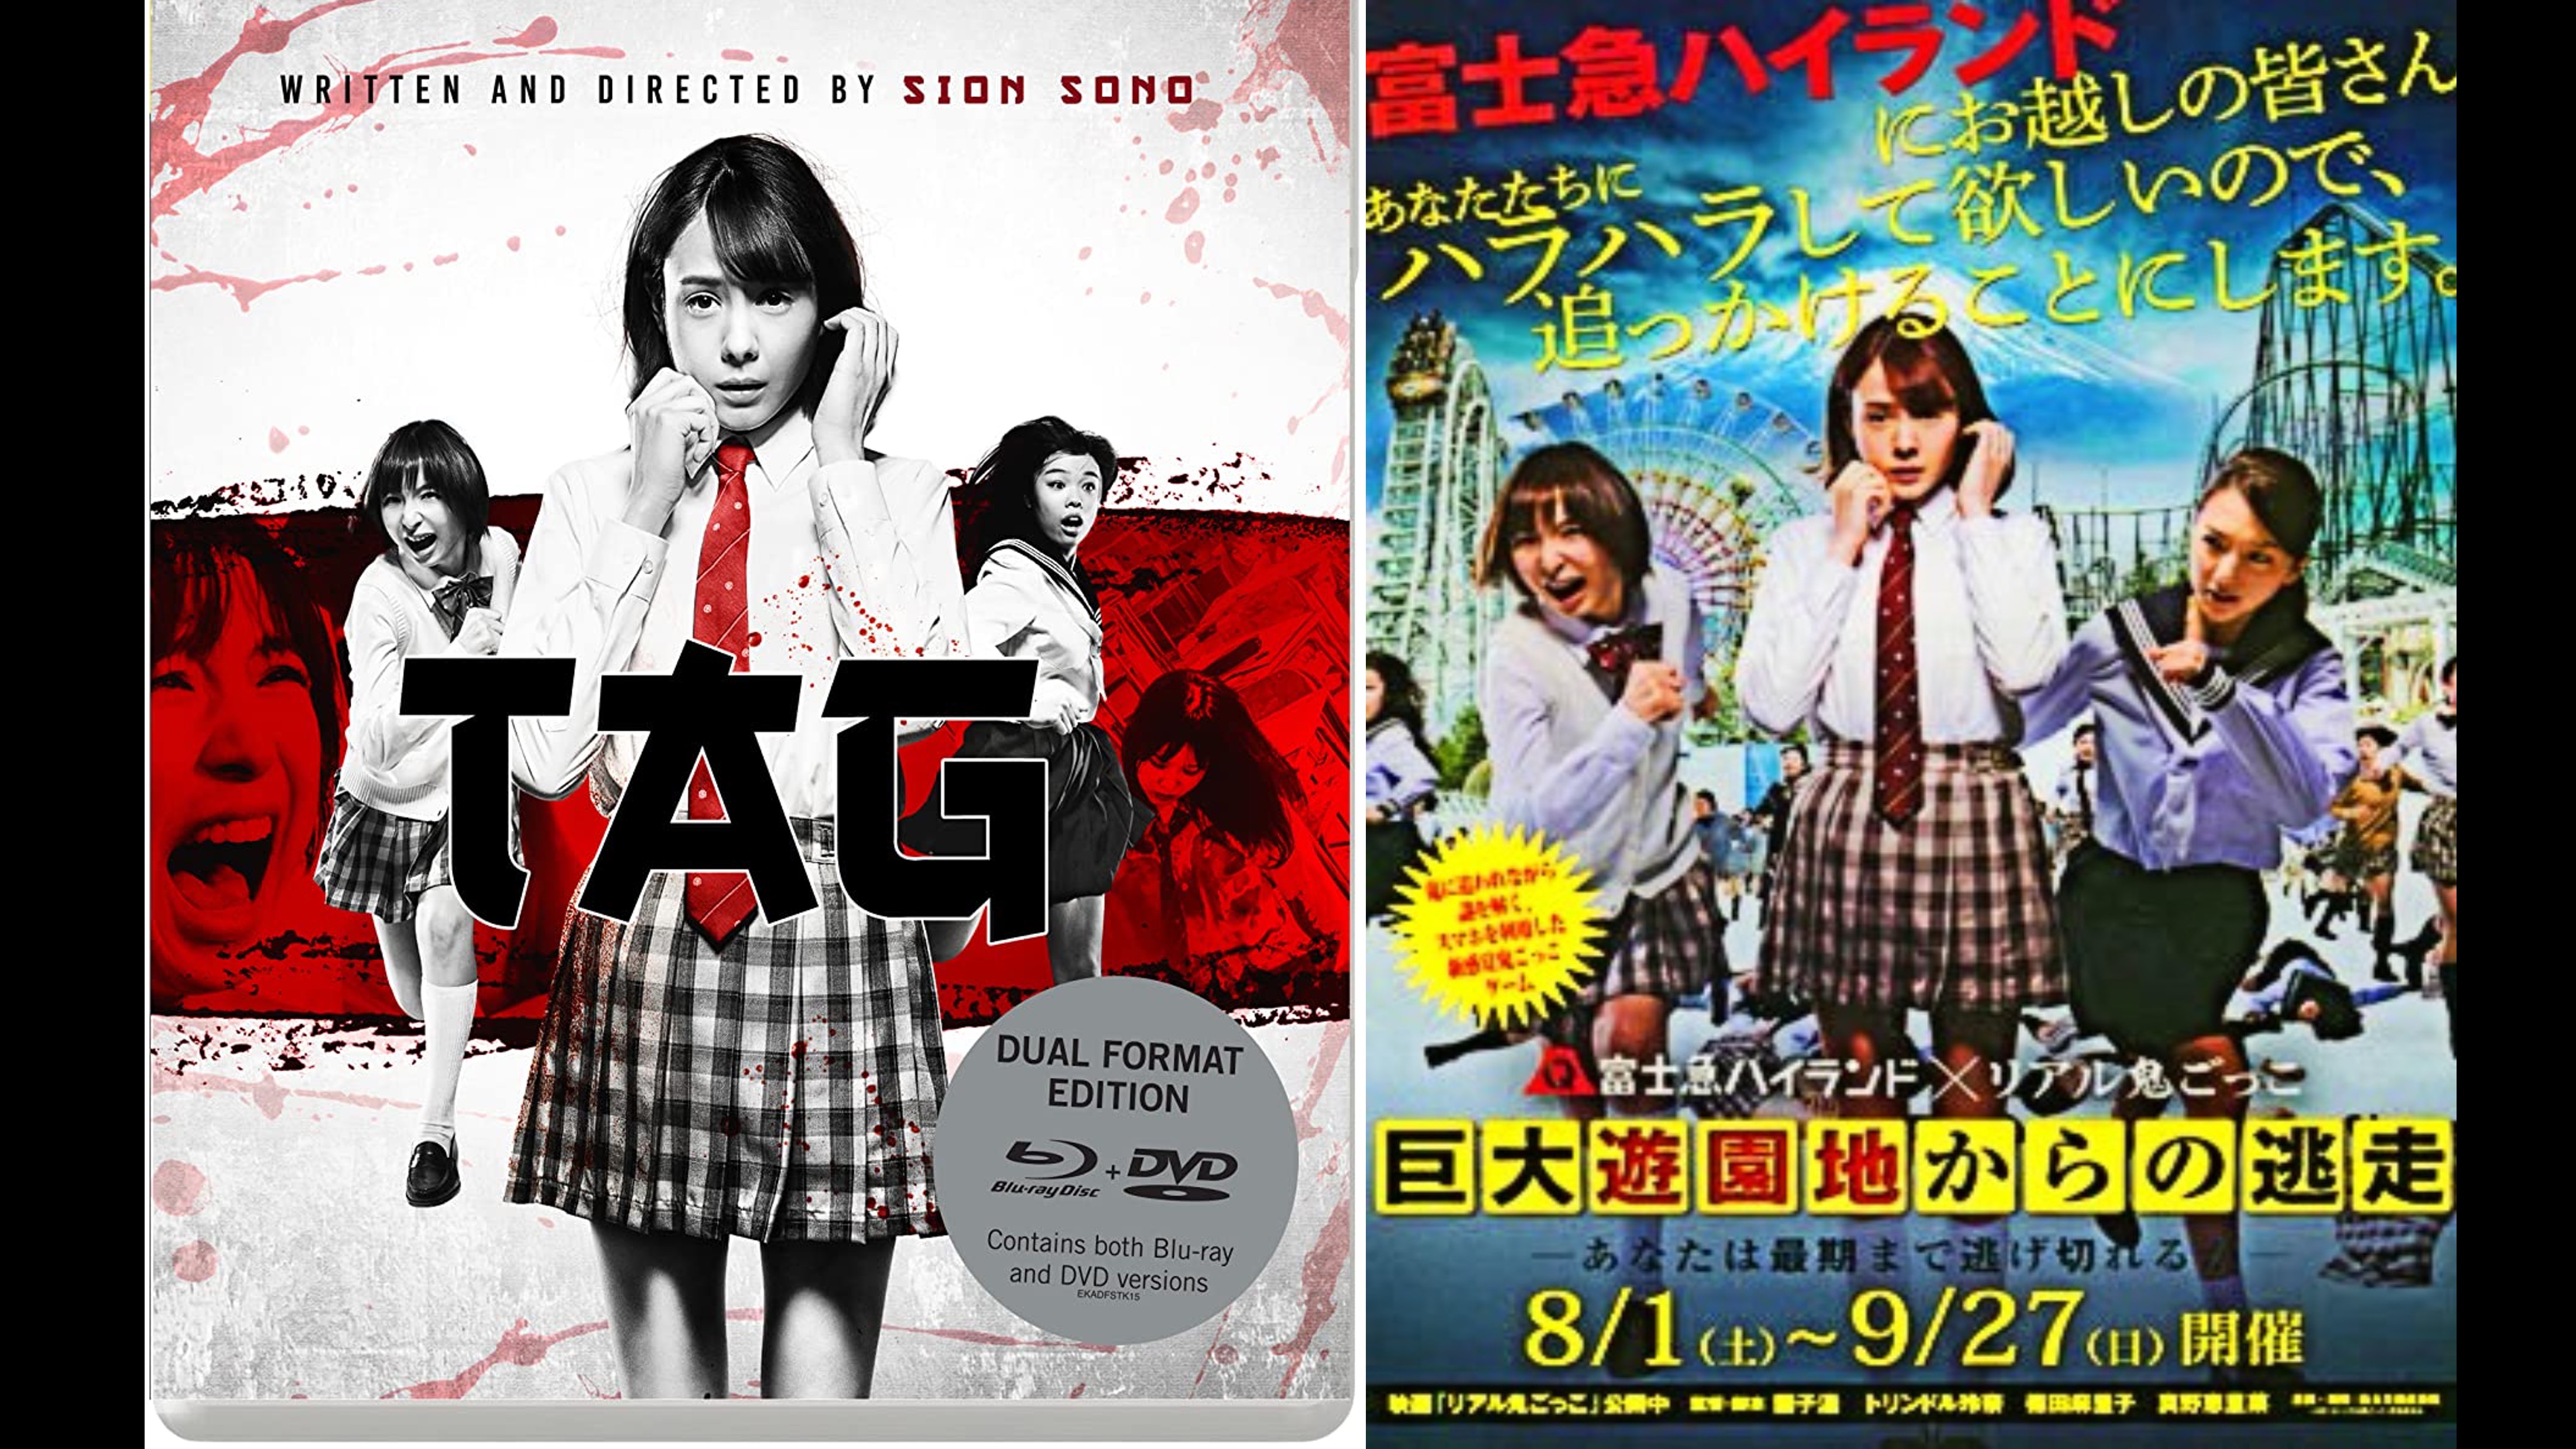 Cinema Secreto: Cinegnose: Série 'Alice in Borderland': o gnosticismo pop  japonês dos mangás ao vídeo